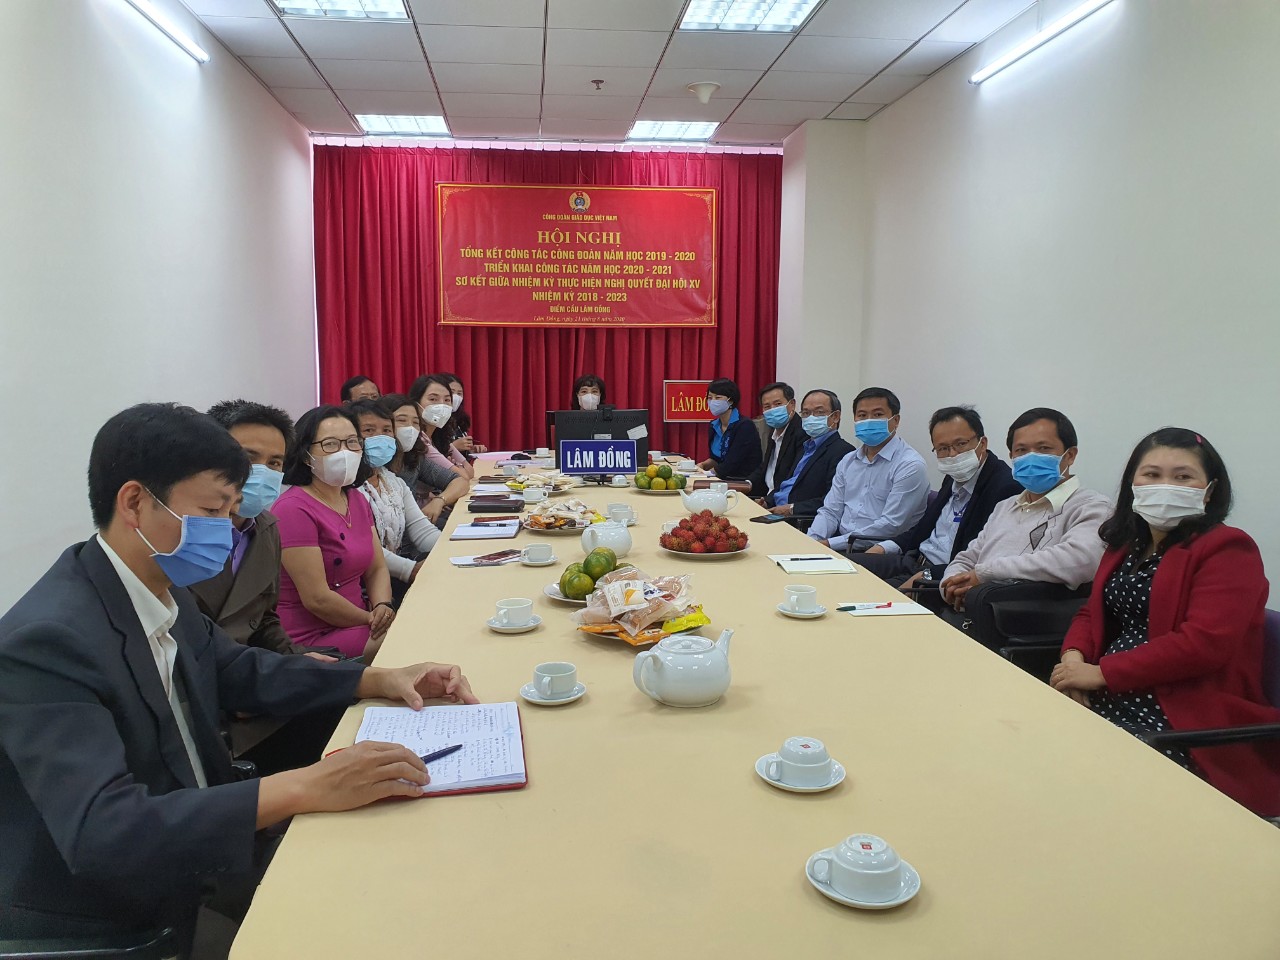 Hội nghị trực tuyến tổng kết hoạt động công đoàn năm học 2019-2020 do Công đoàn Giáo dục Việt Nam tổ chức